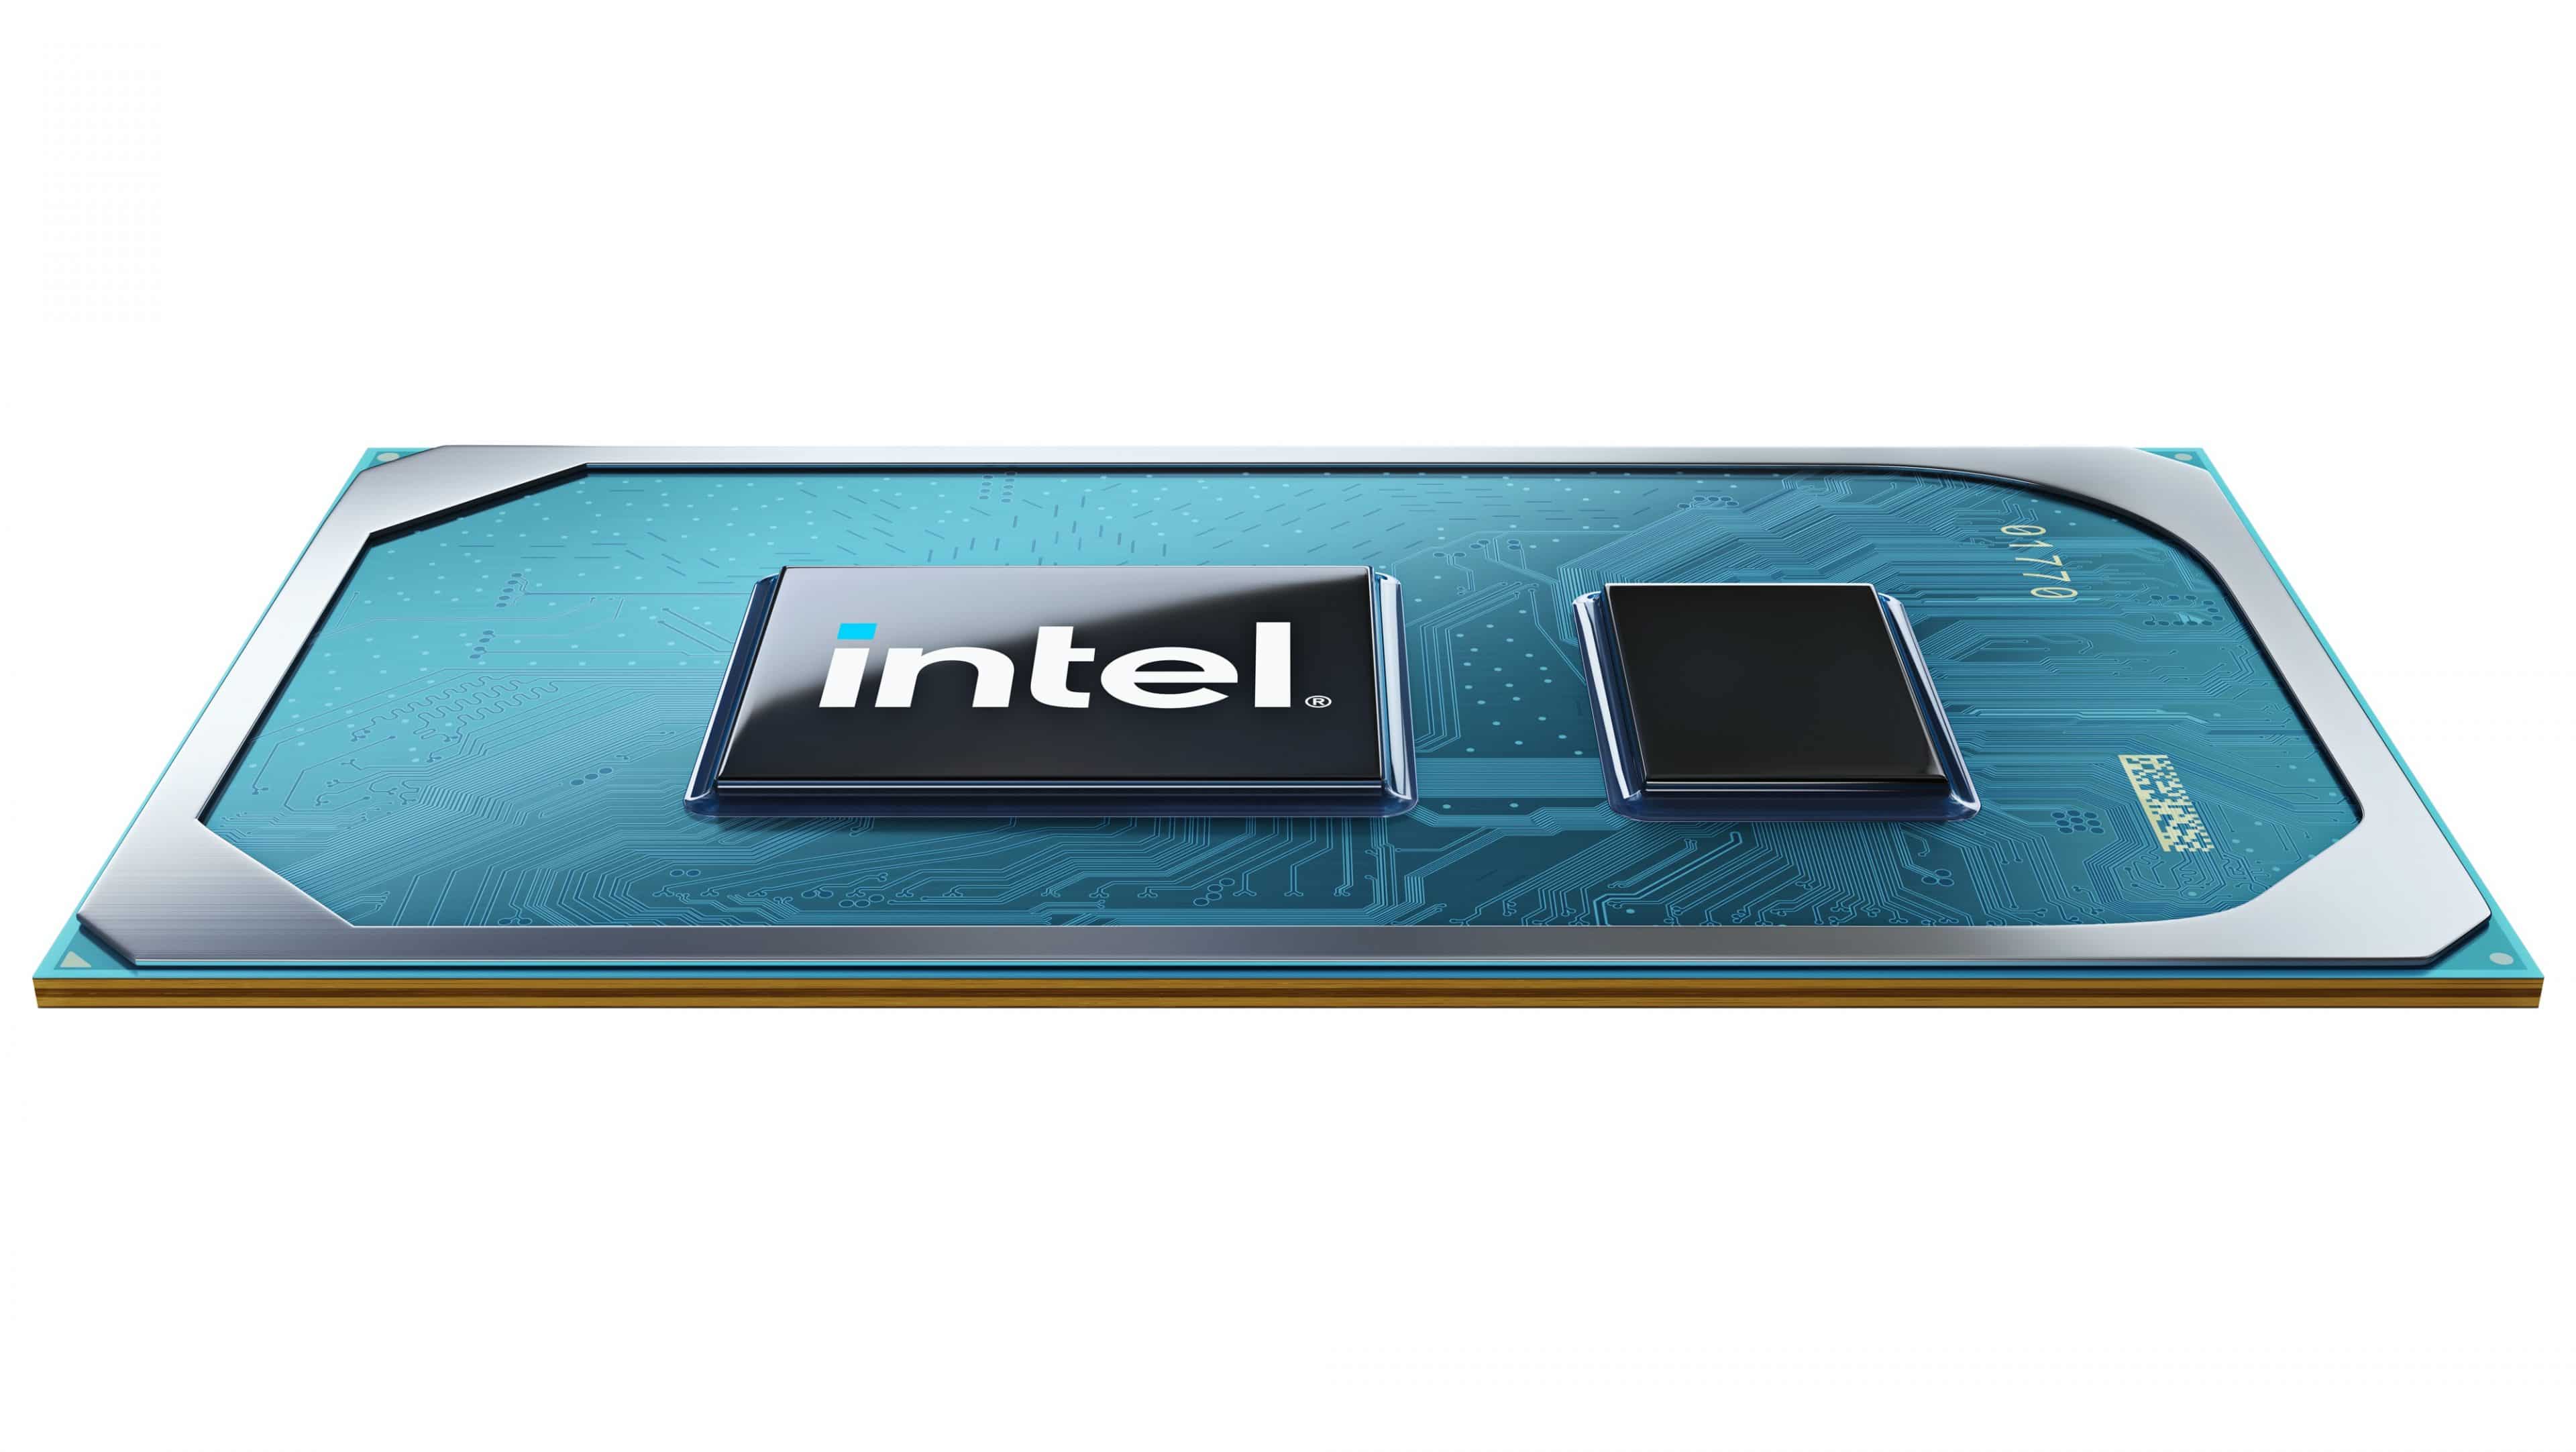 Intel ra mắt Tiger Lake - CPU thế hệ 11 dành cho laptop, có tích hợp GPU Intel Iris Xe